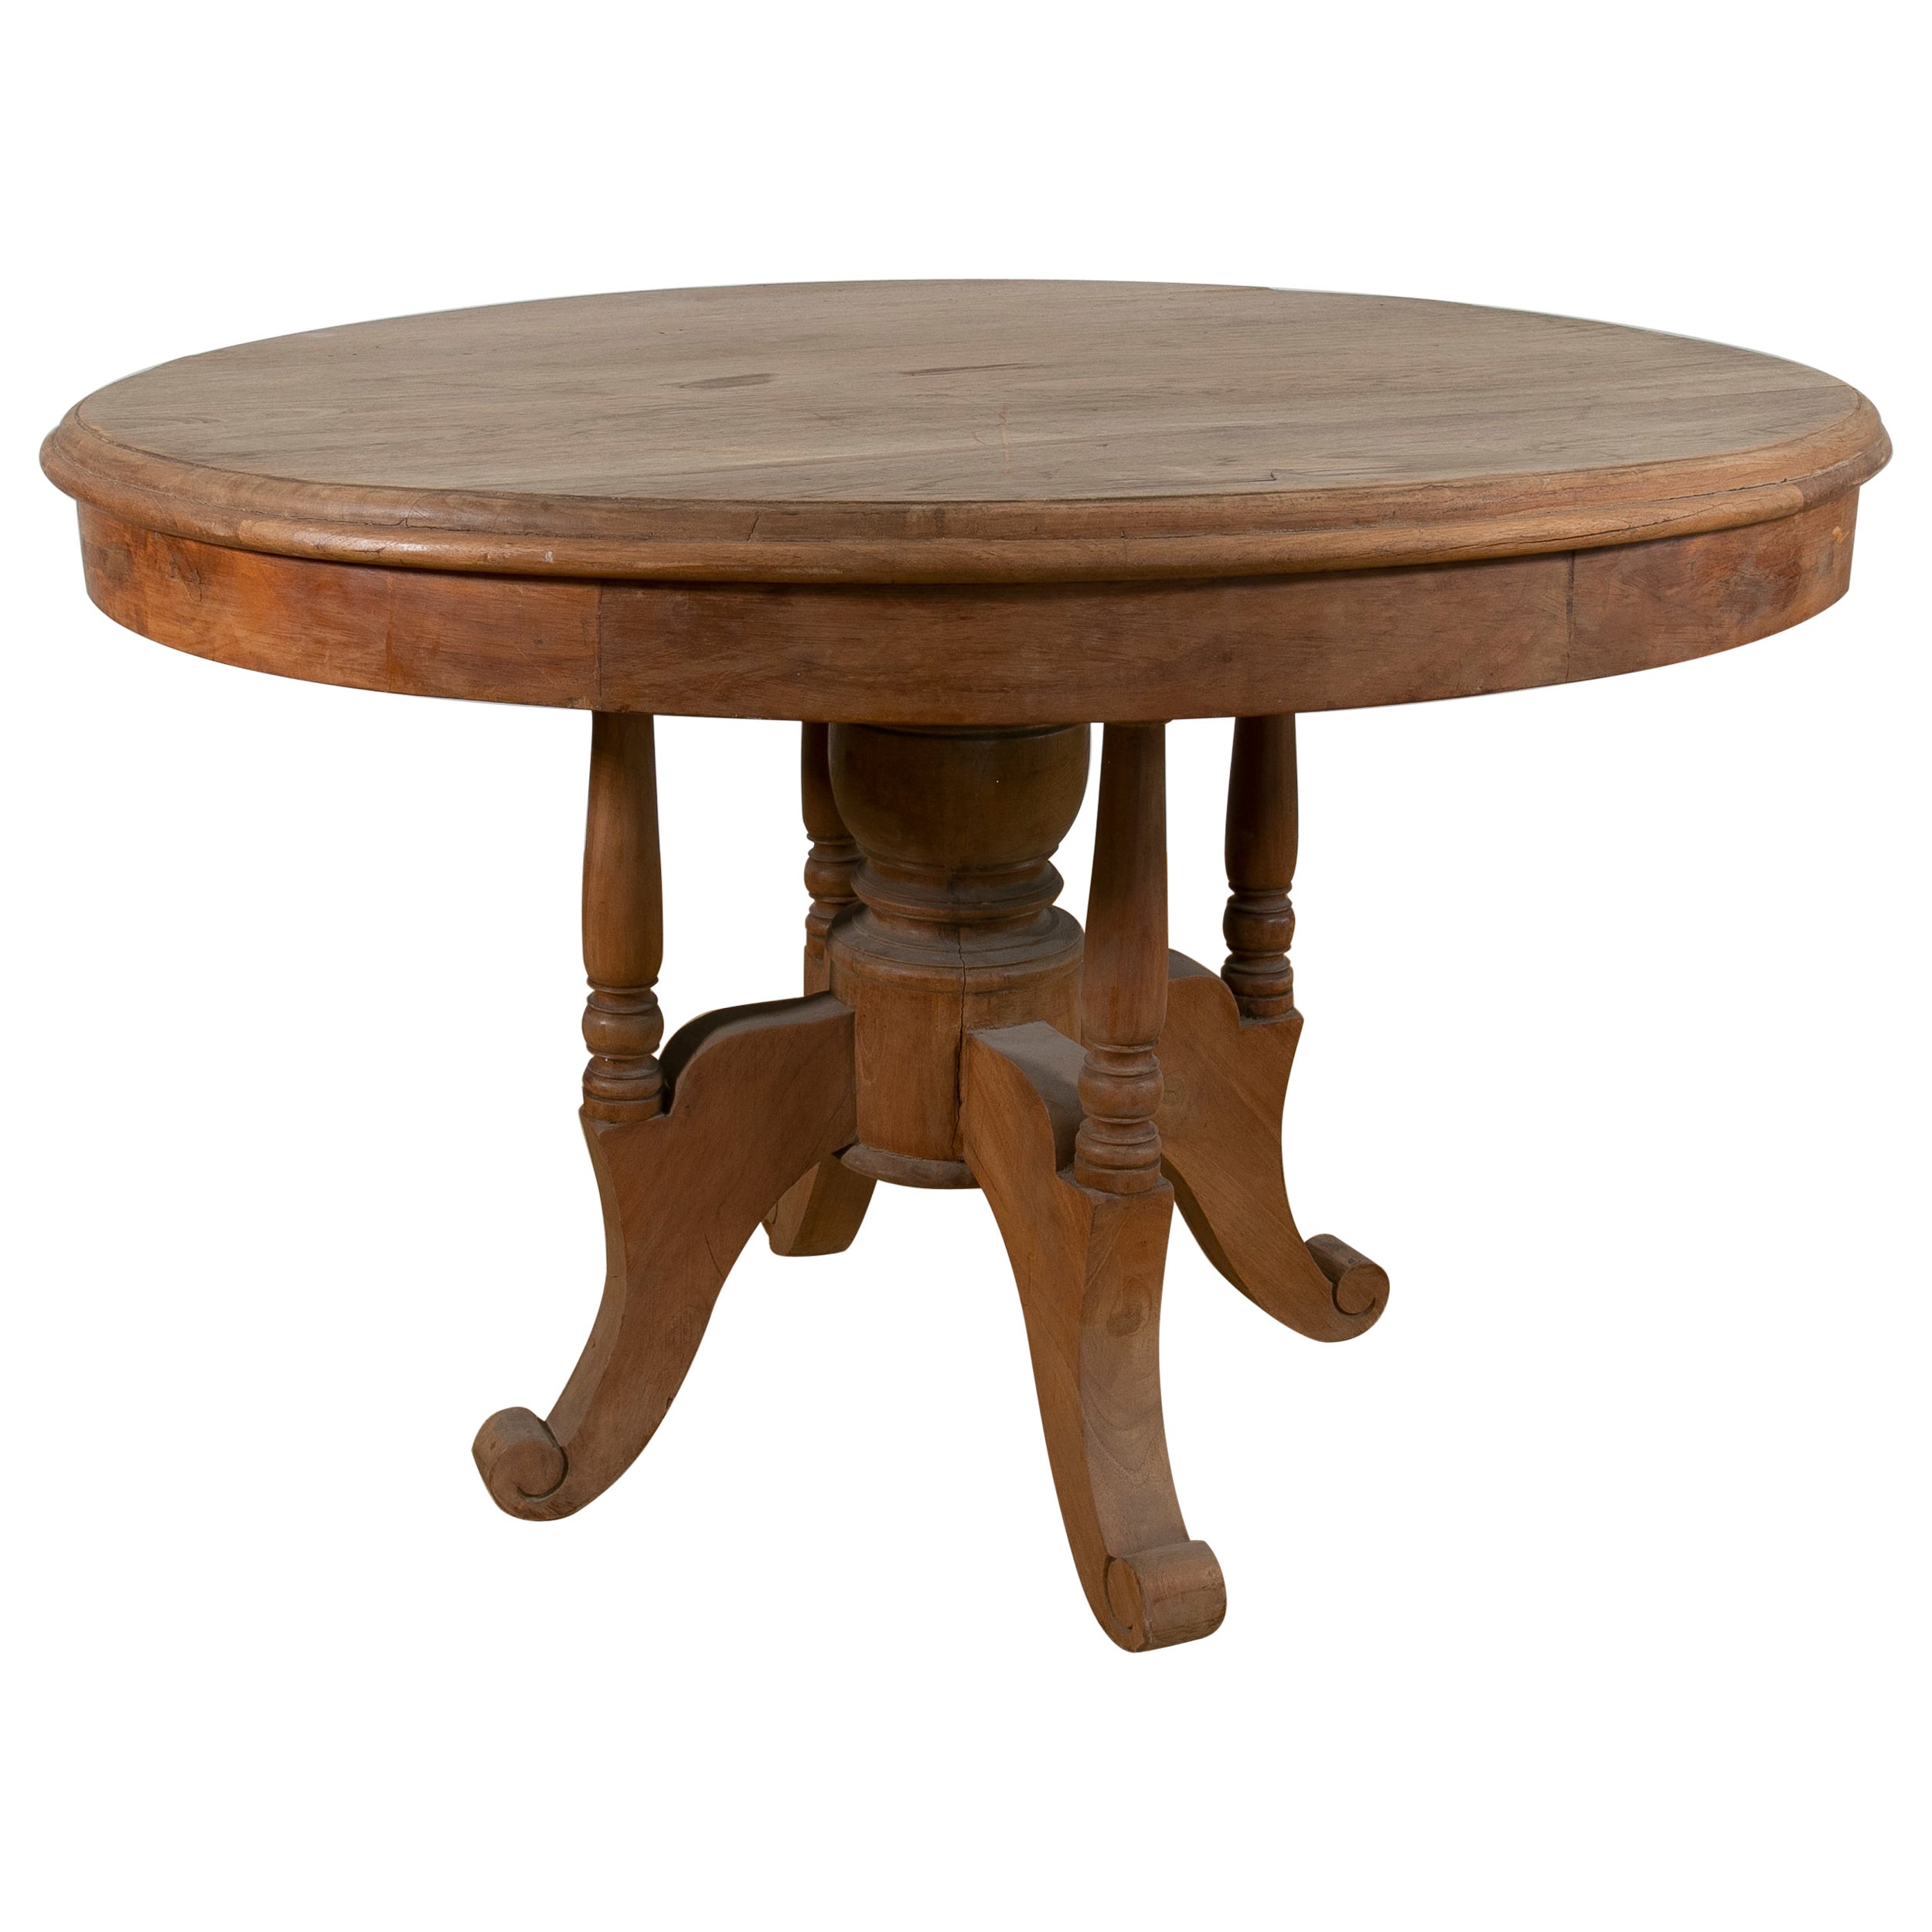 Spanischer runder spanischer Tisch aus Holz in der Originalfarbe mit gedrechselten Beinen